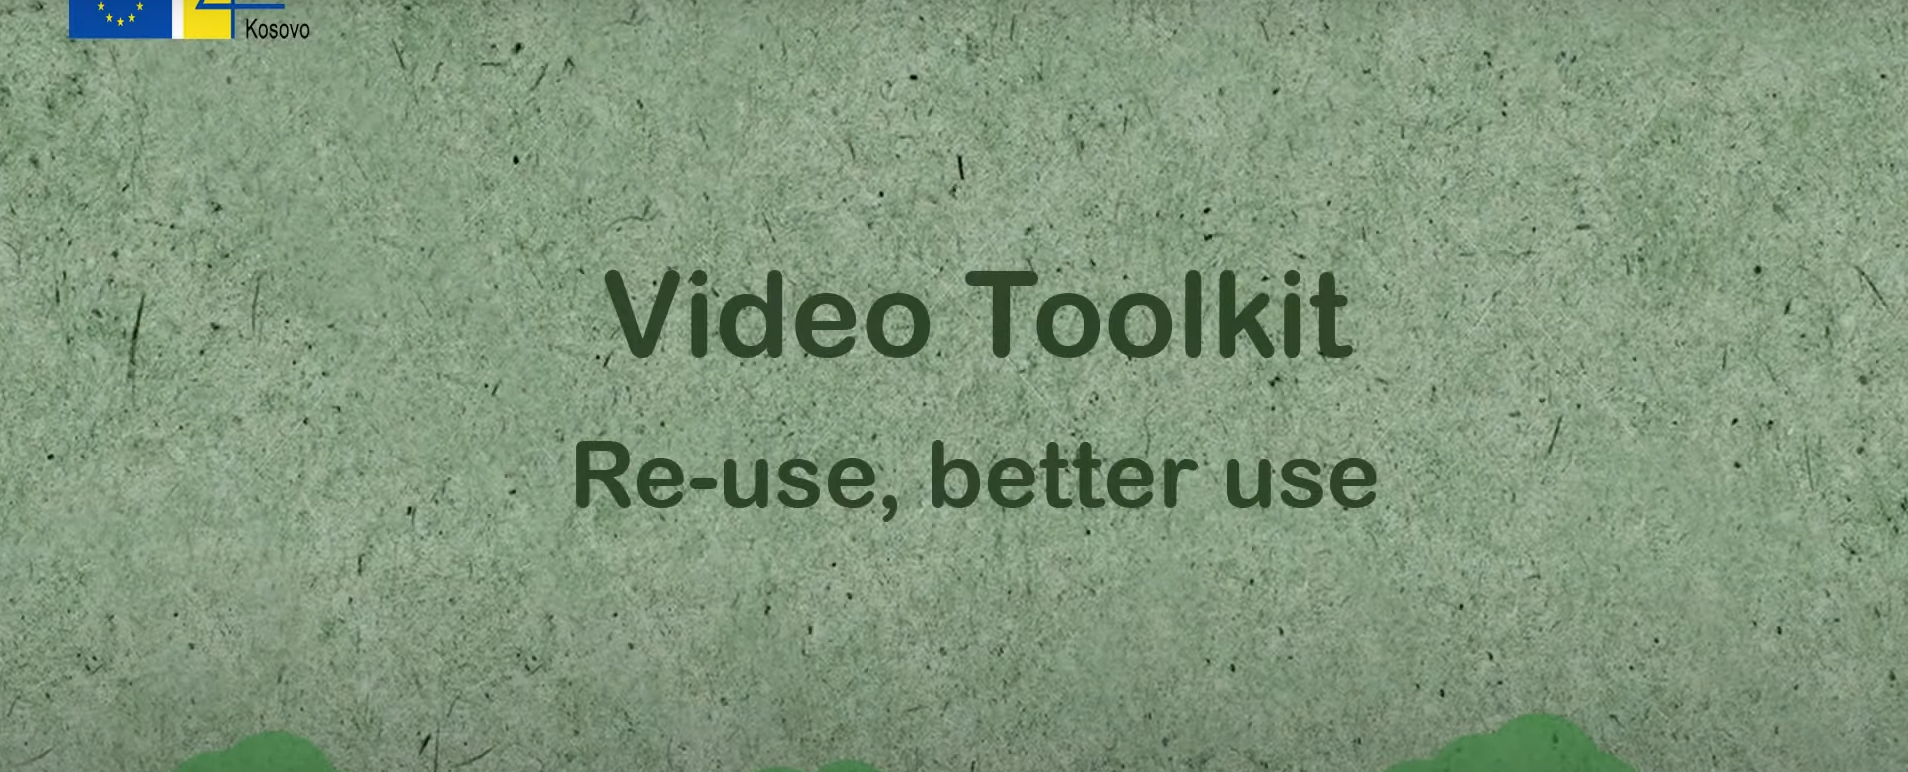 Nga Video Toolkiti i publikimit Re-use, better use punimi Lisi nga kartoni